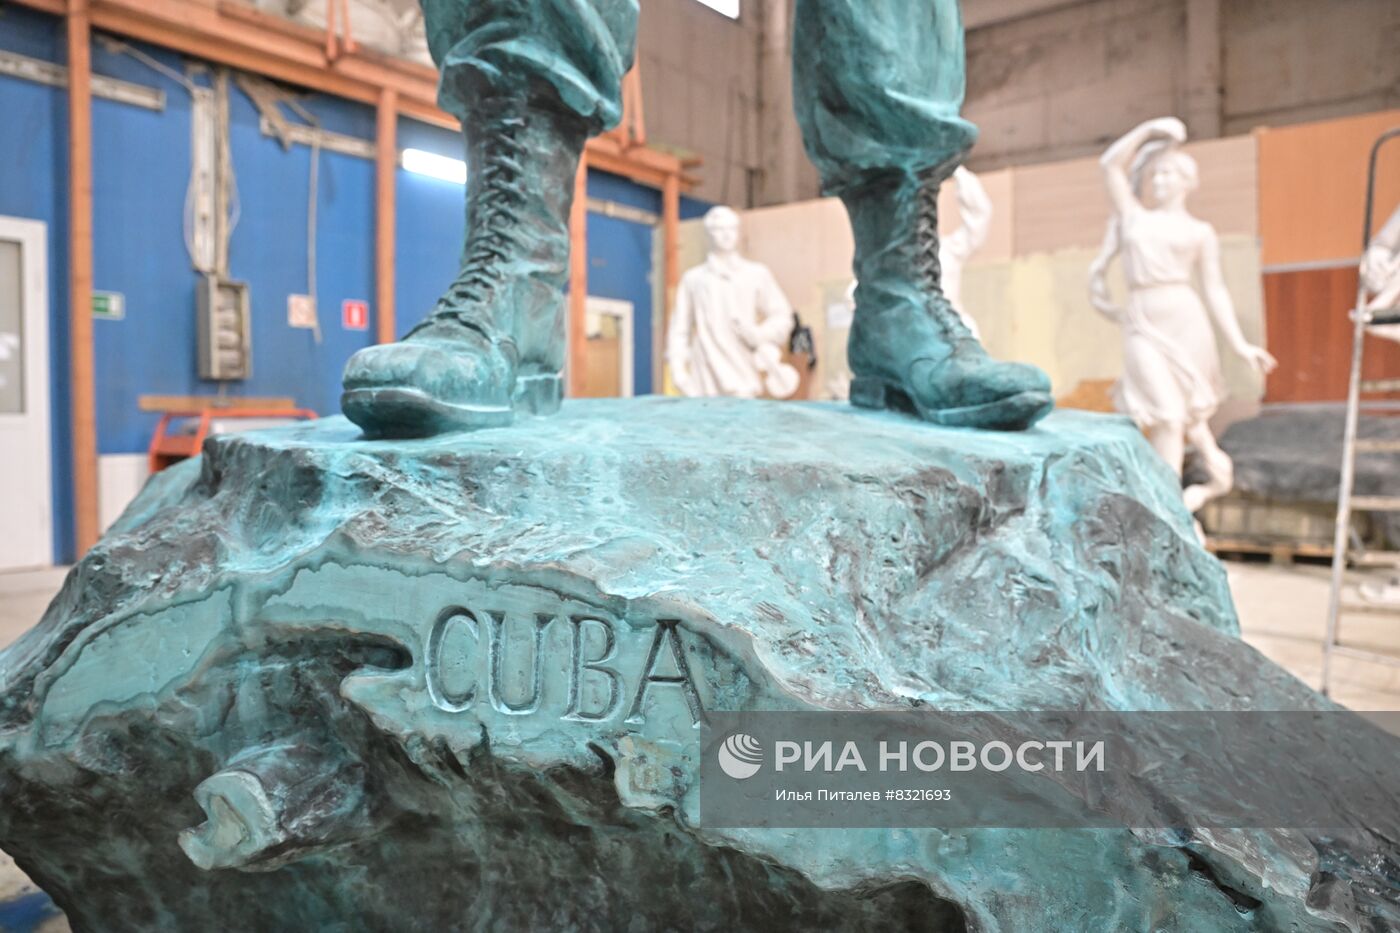 Памятник Фиделю Кастро в мастерской скульптора